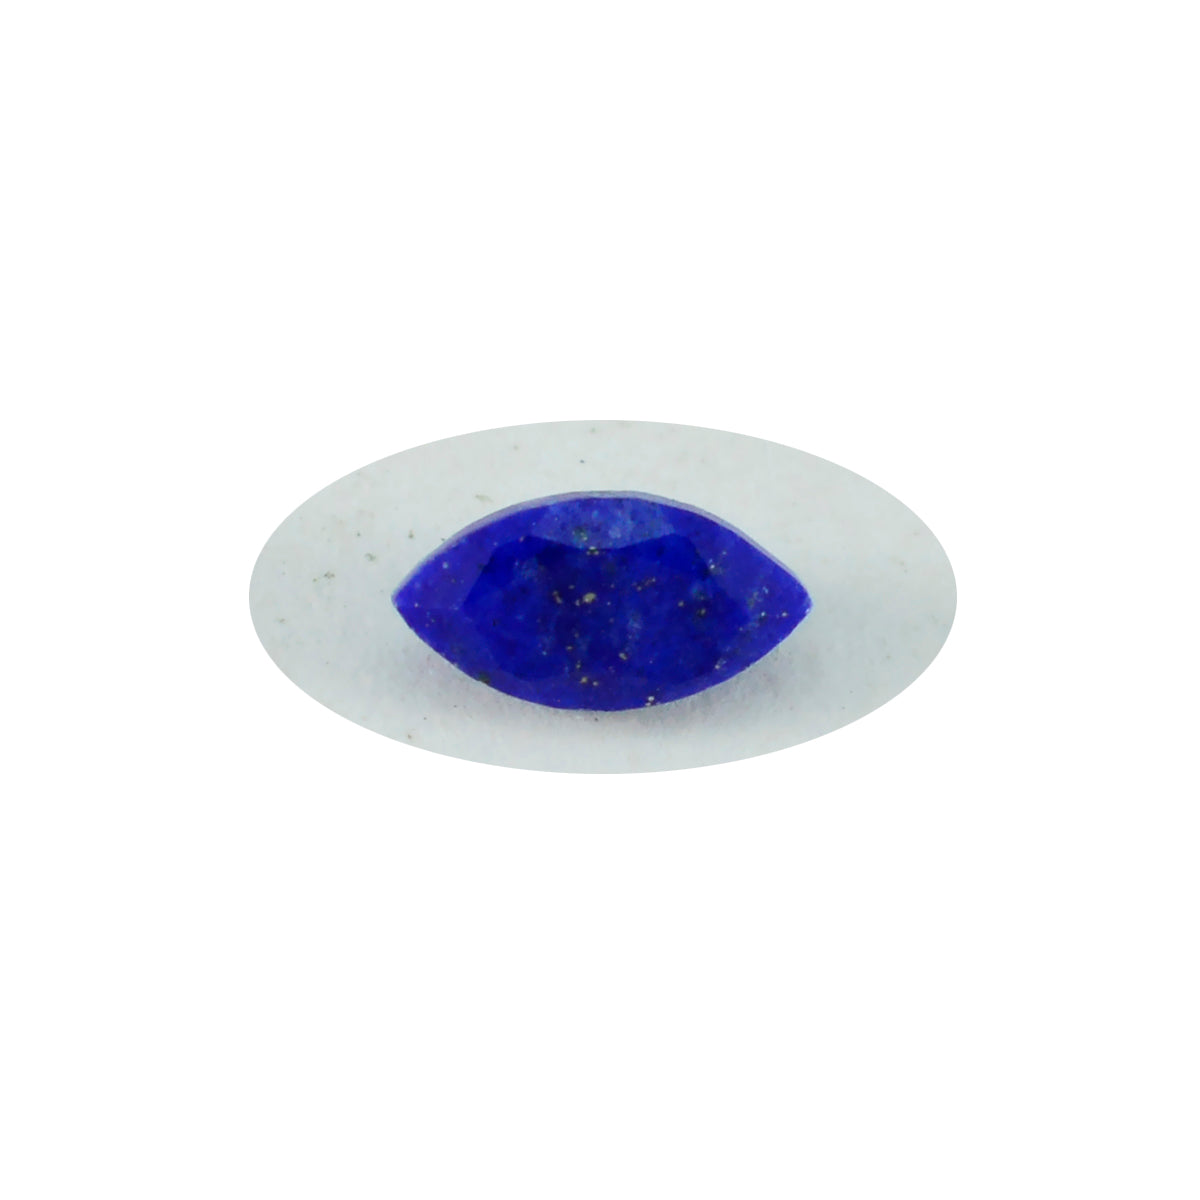 Riyogems 1PC Echte Blauwe Lapis Lazuli Facet 10x20 mm Marquise Vorm Mooie Kwaliteit Losse Edelstenen